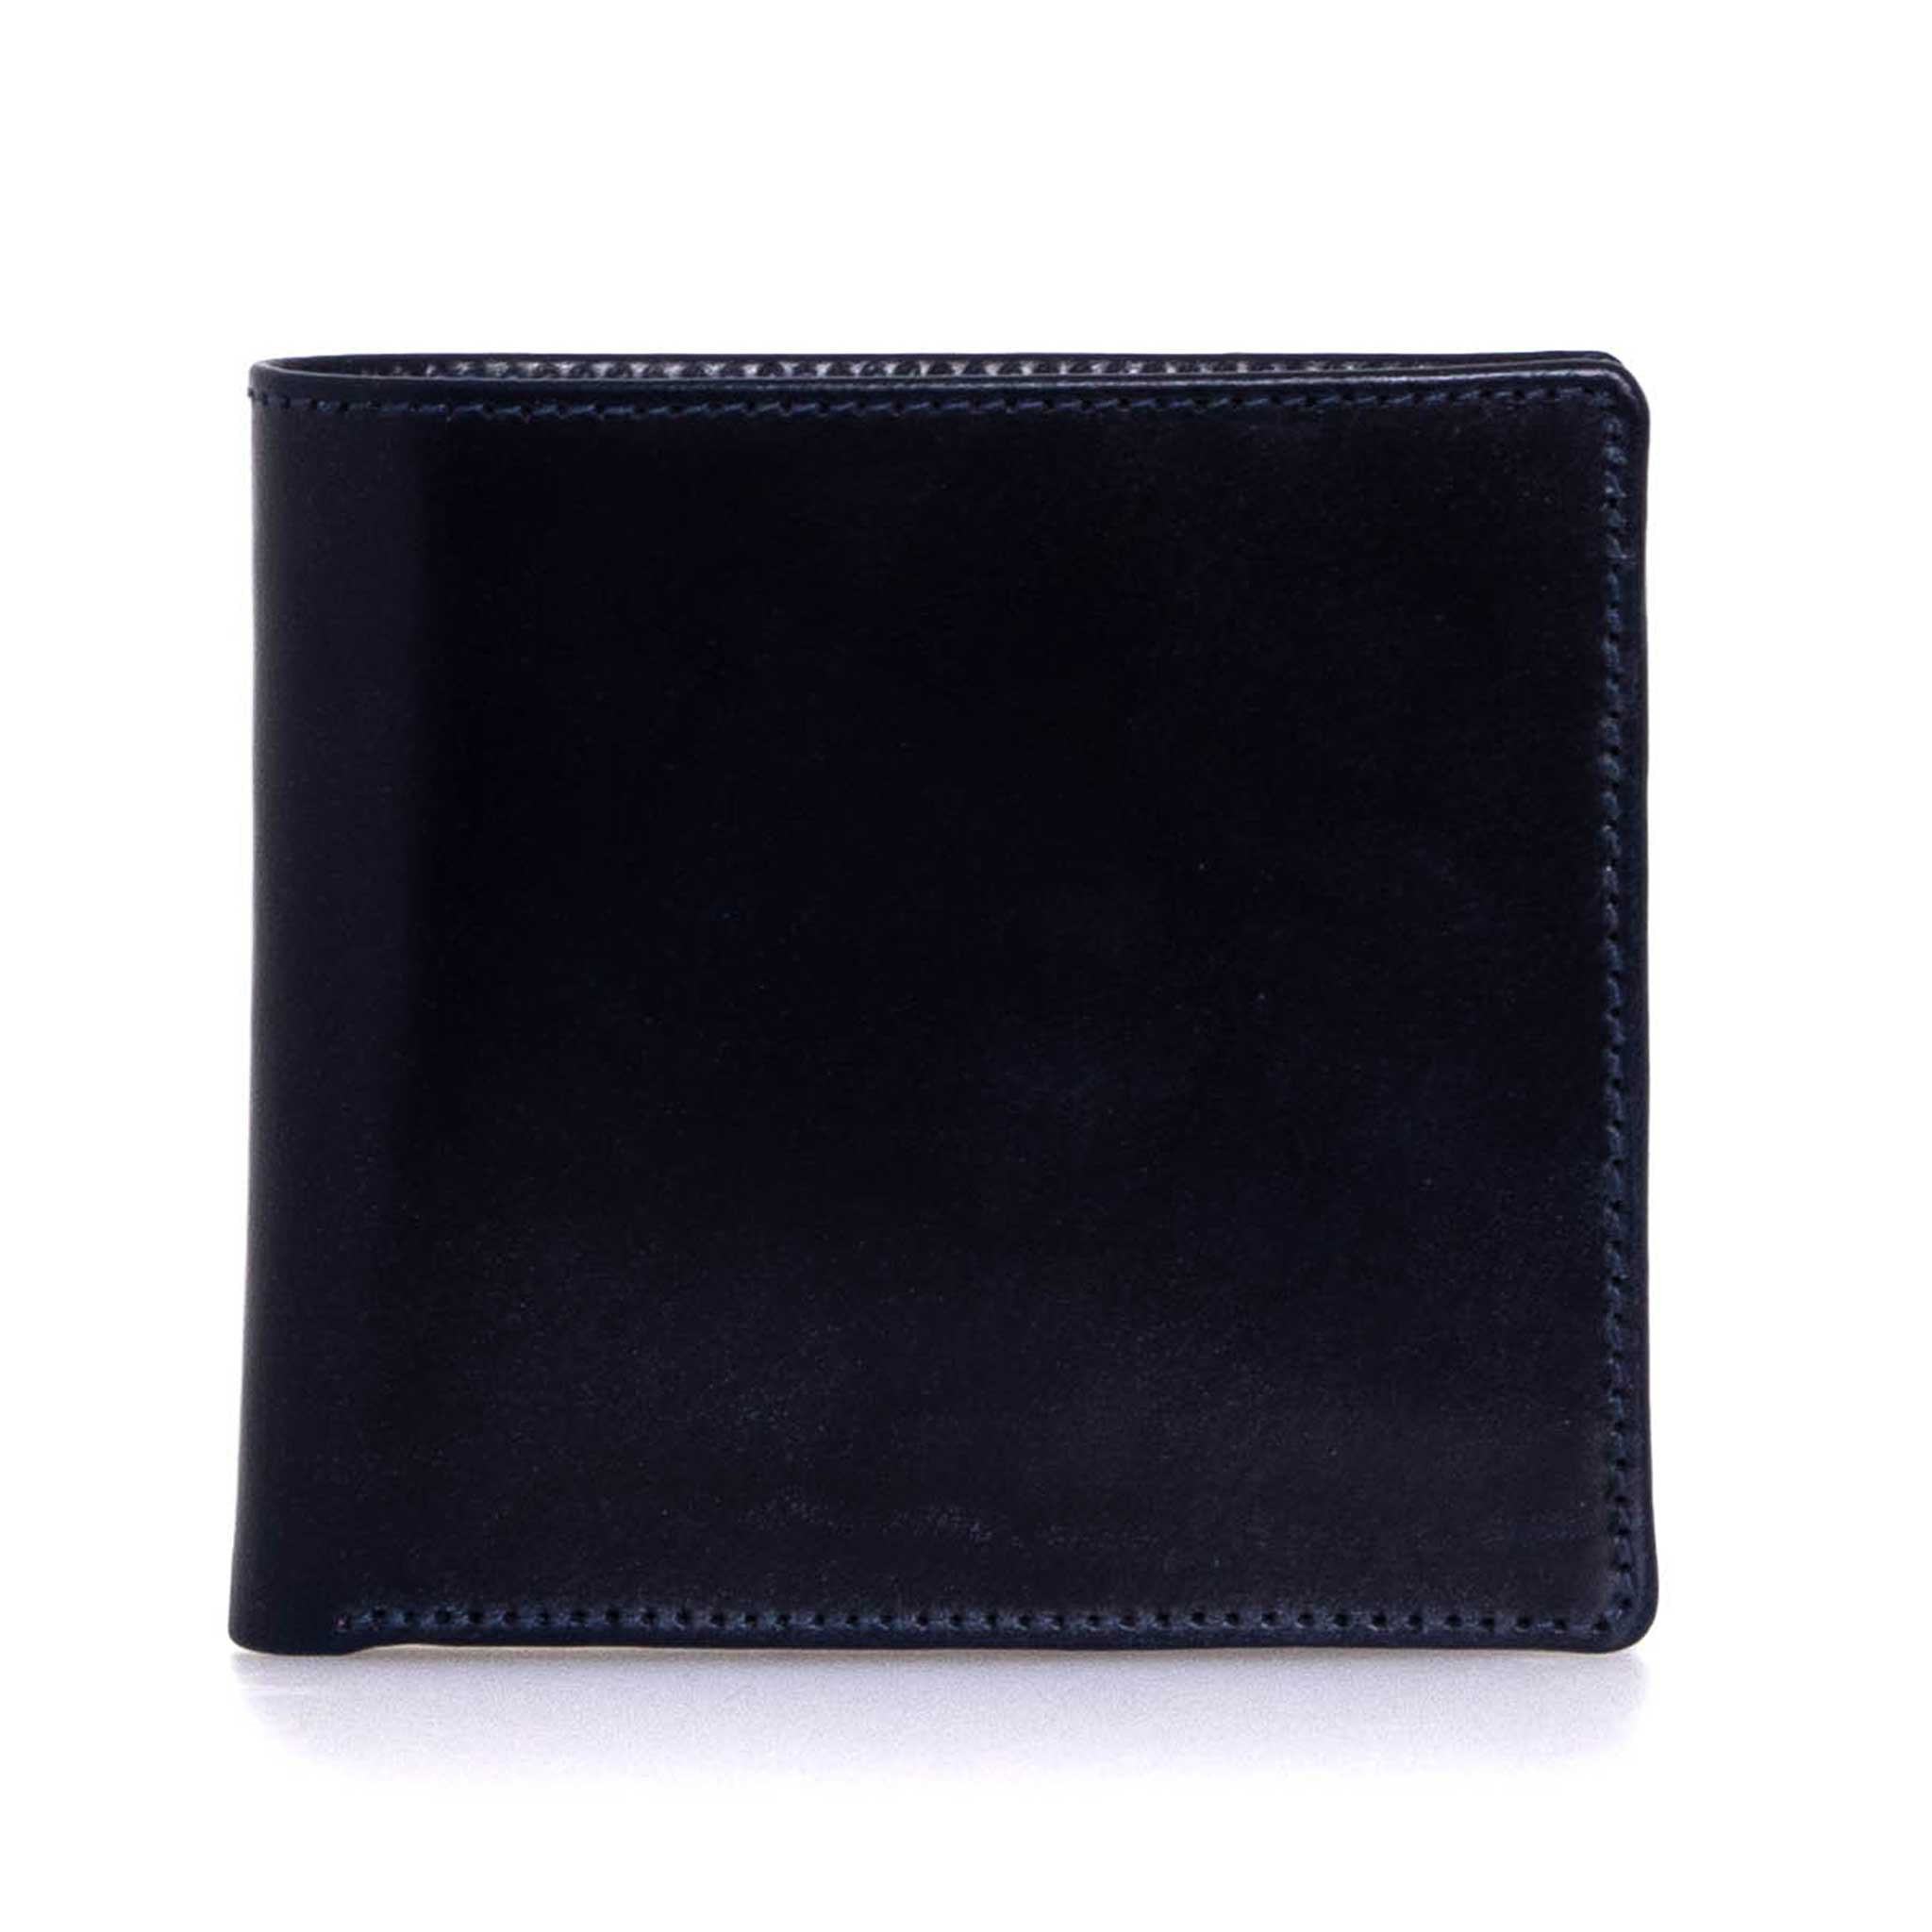 【楽天市場】ホワイトハウスコックス WHITEHOUSE COX 財布 メンズ 二つ折り財布(小銭入れ付) ネイビー/ニュートン COIN